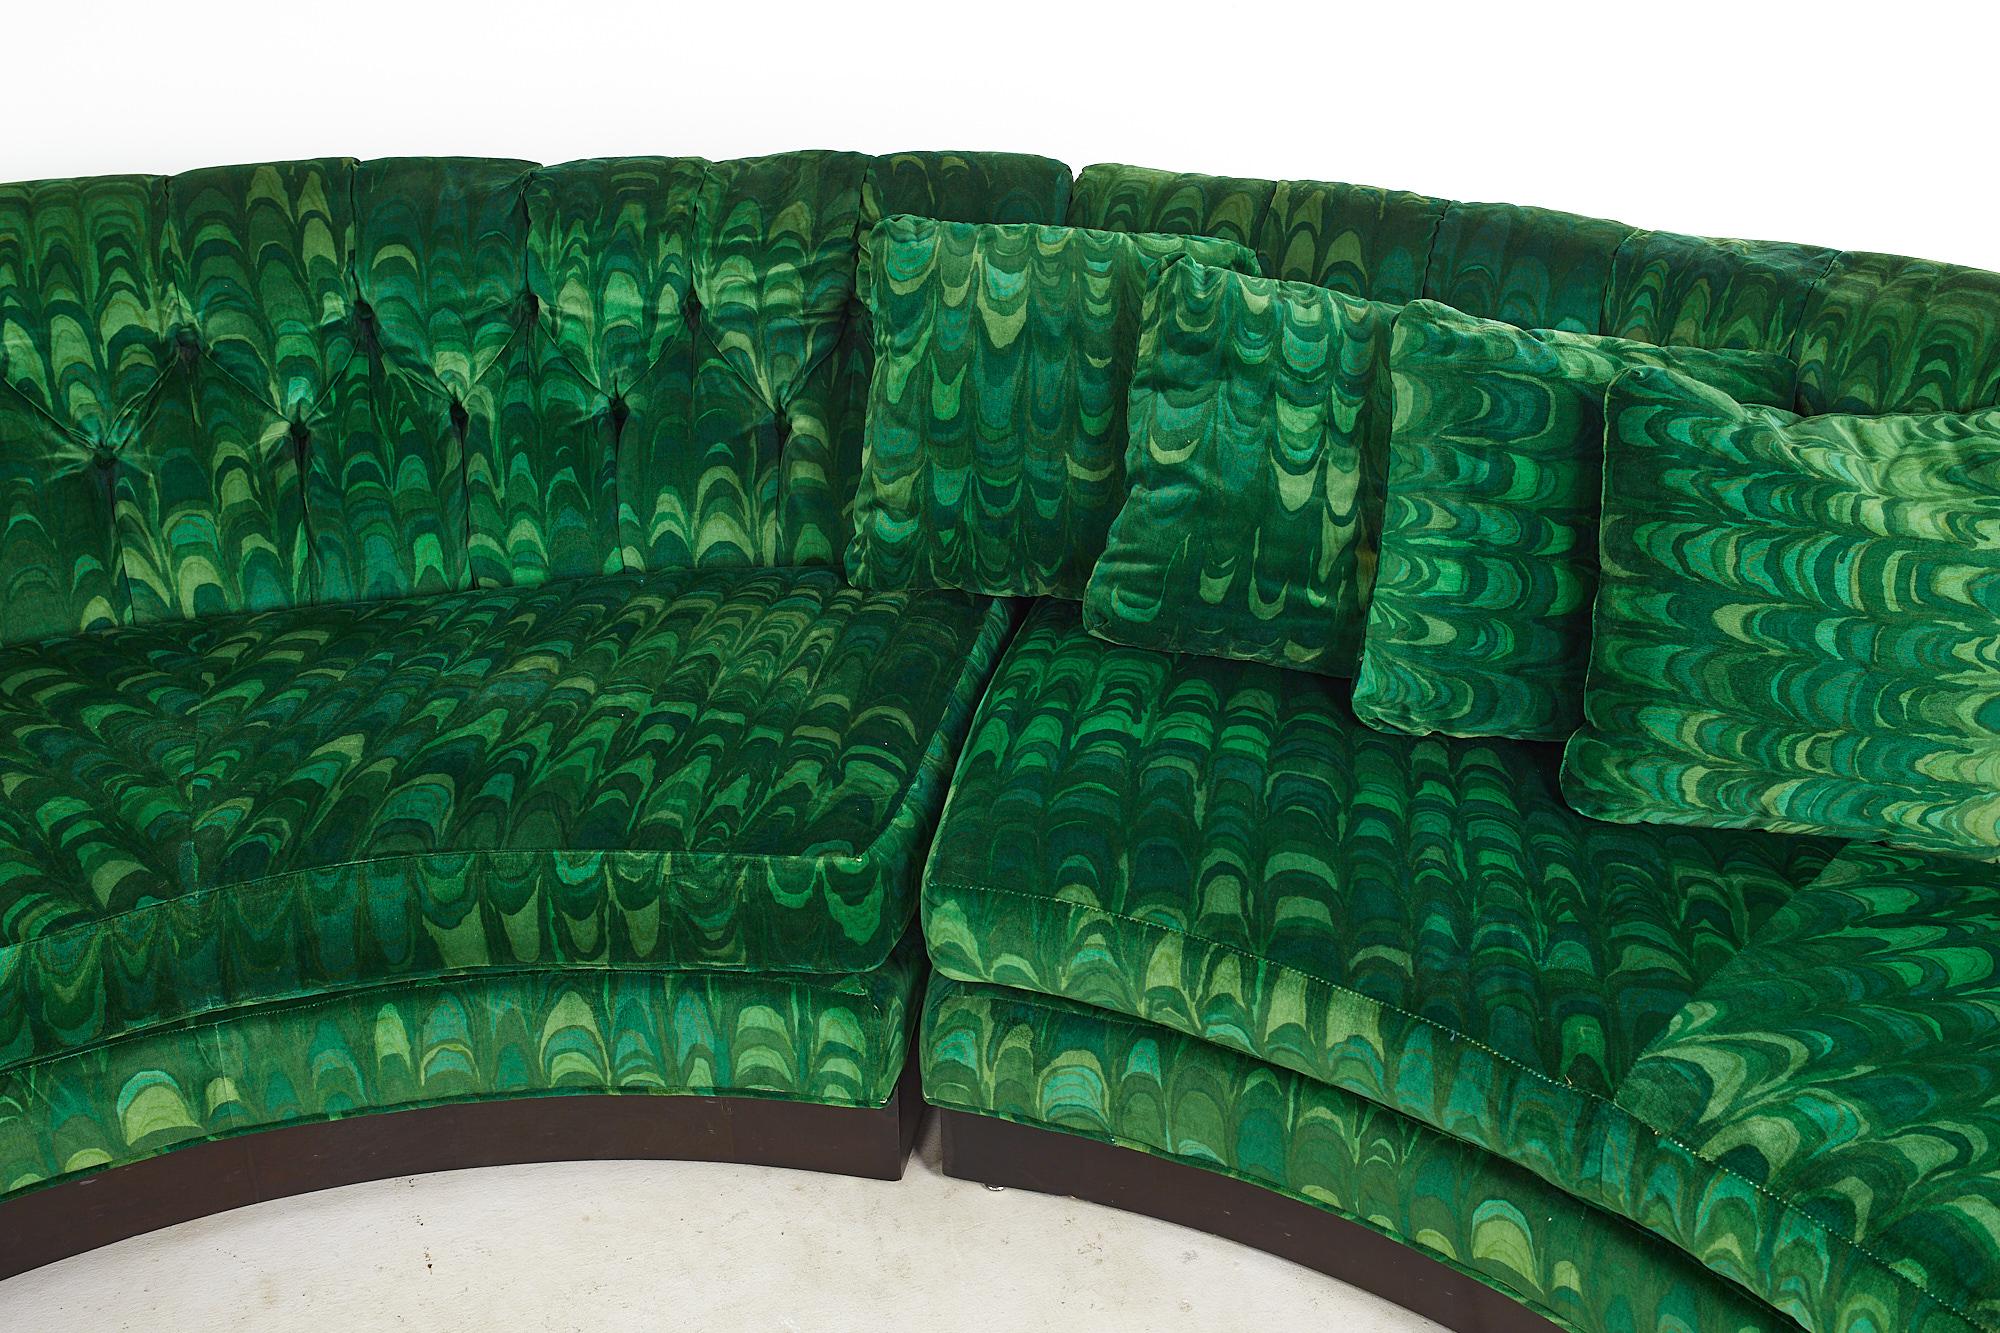 American Erwin Lambeth MCM Circular Sectional Pit Sofa Original Jack Lenor Larsen Fabric For Sale